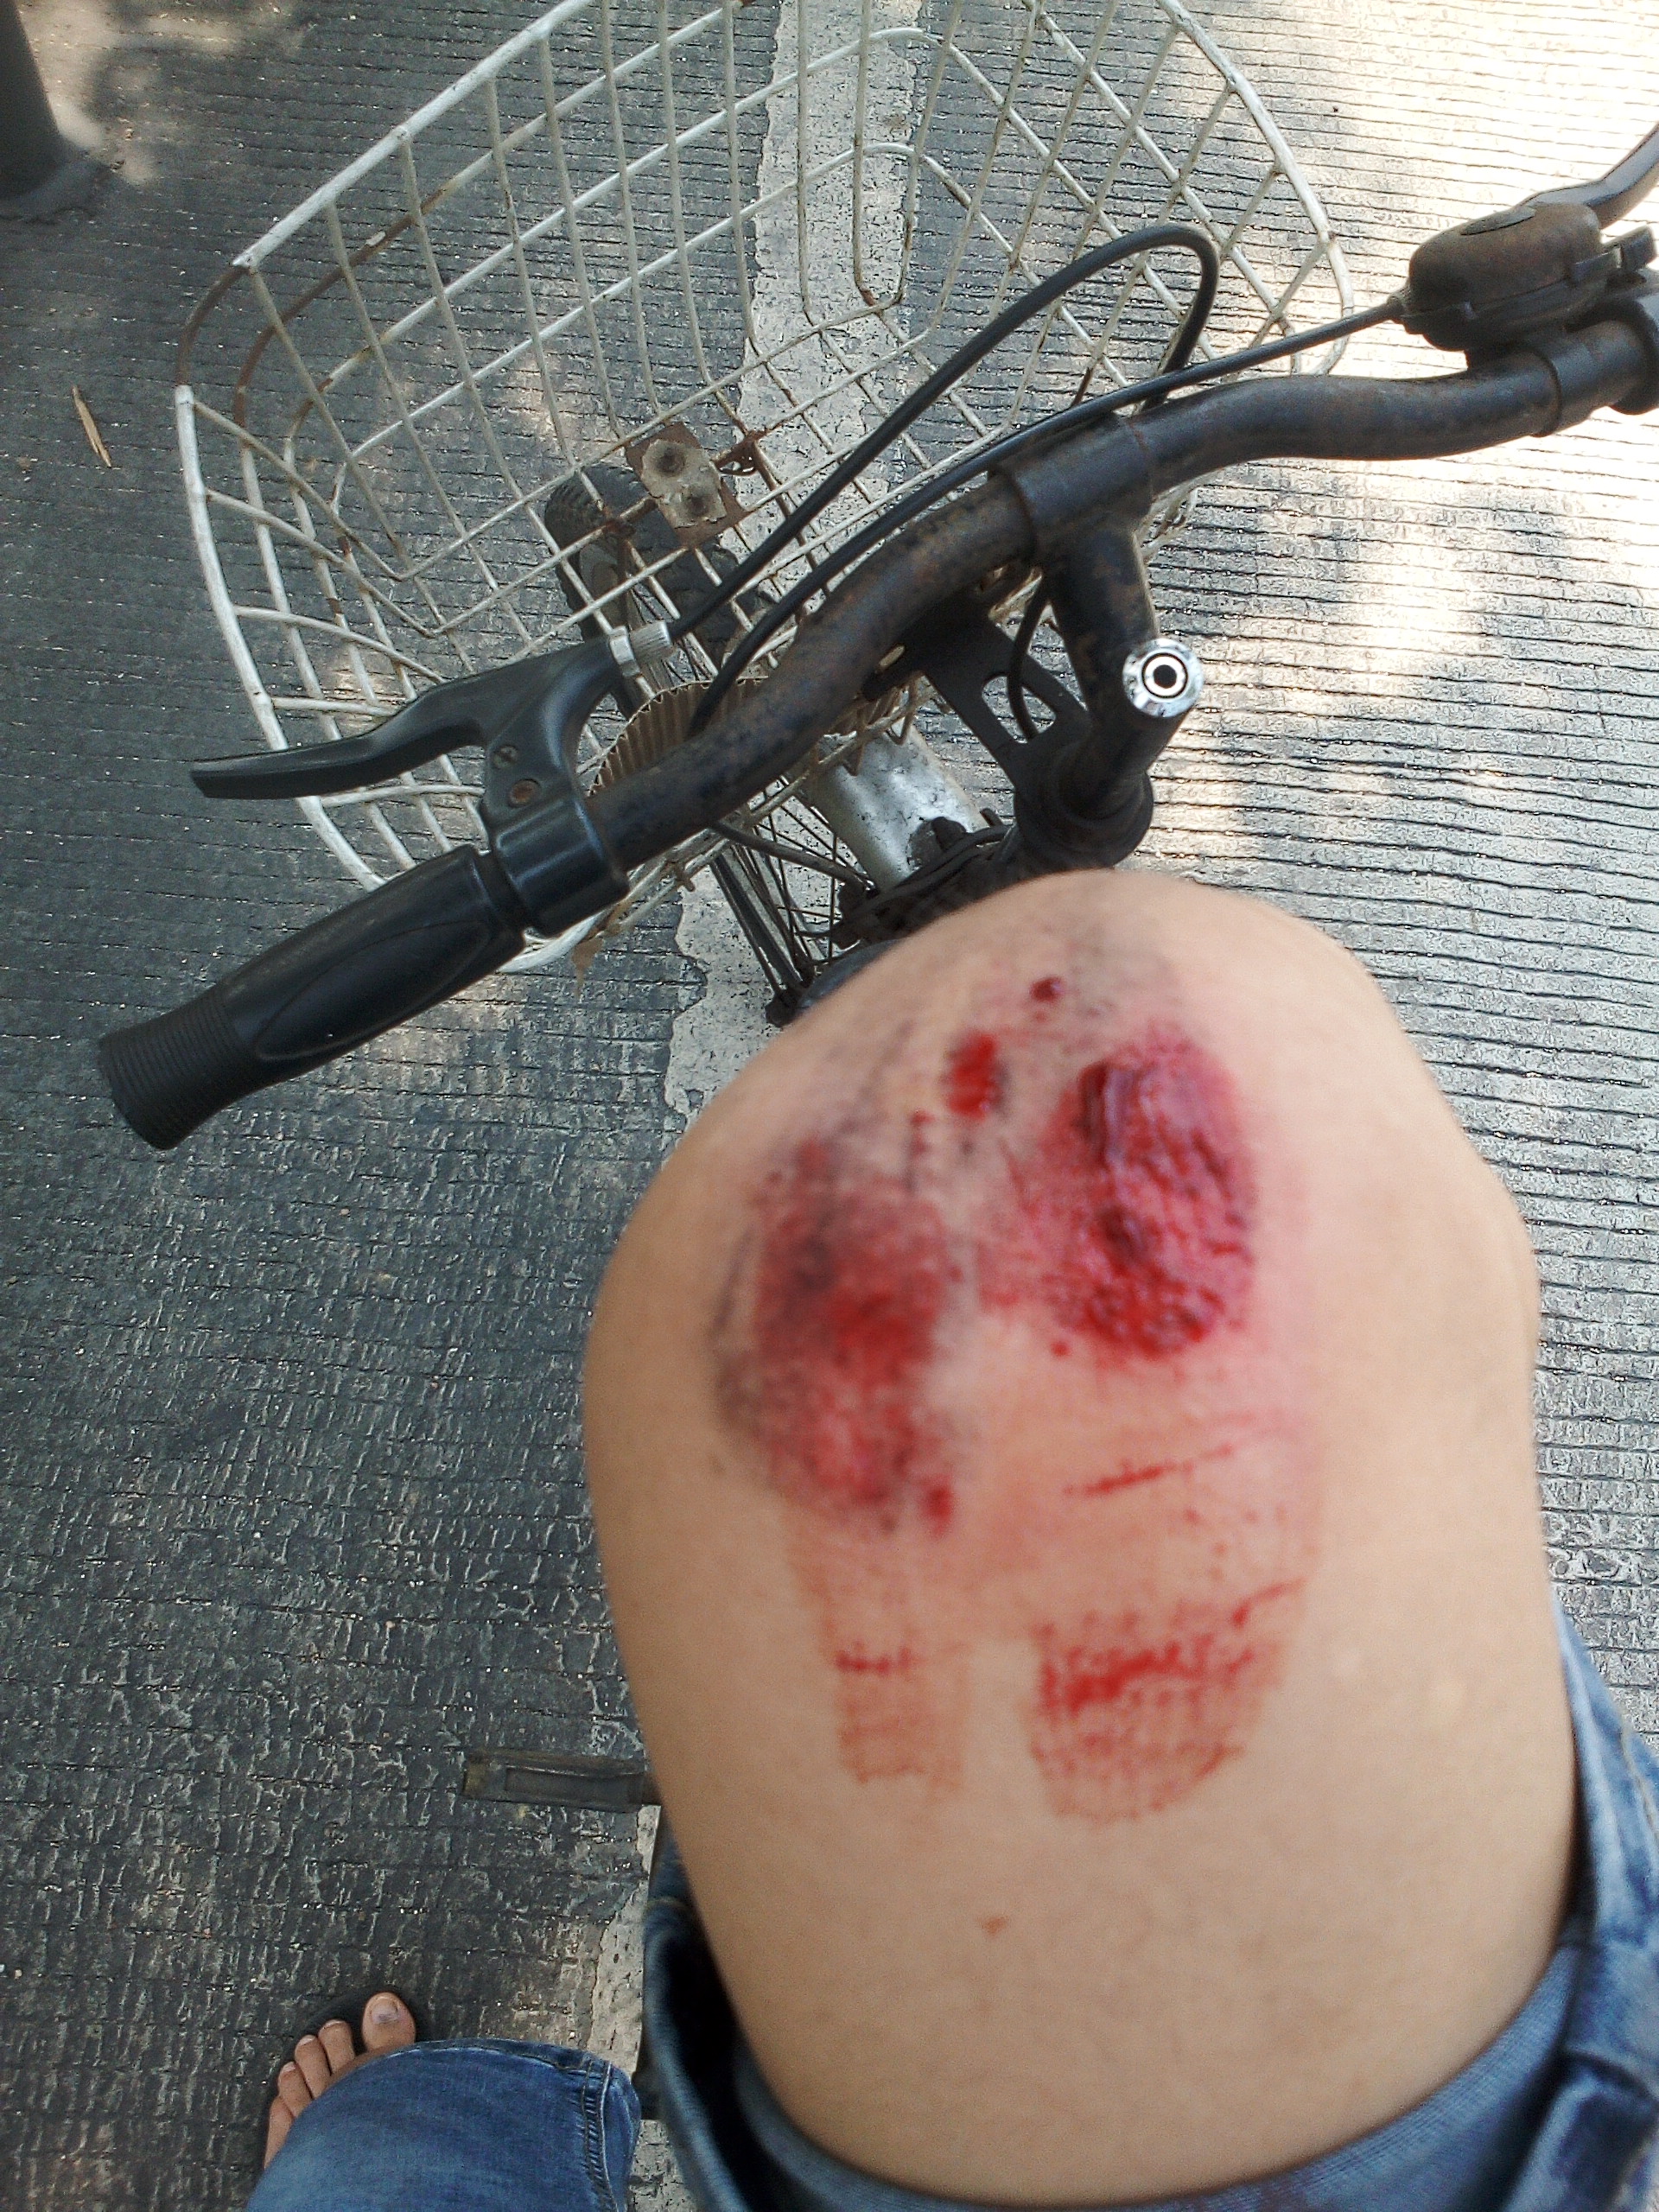 昨天上午骑自行车摔伤的手上也有伤,不能吃什么吗